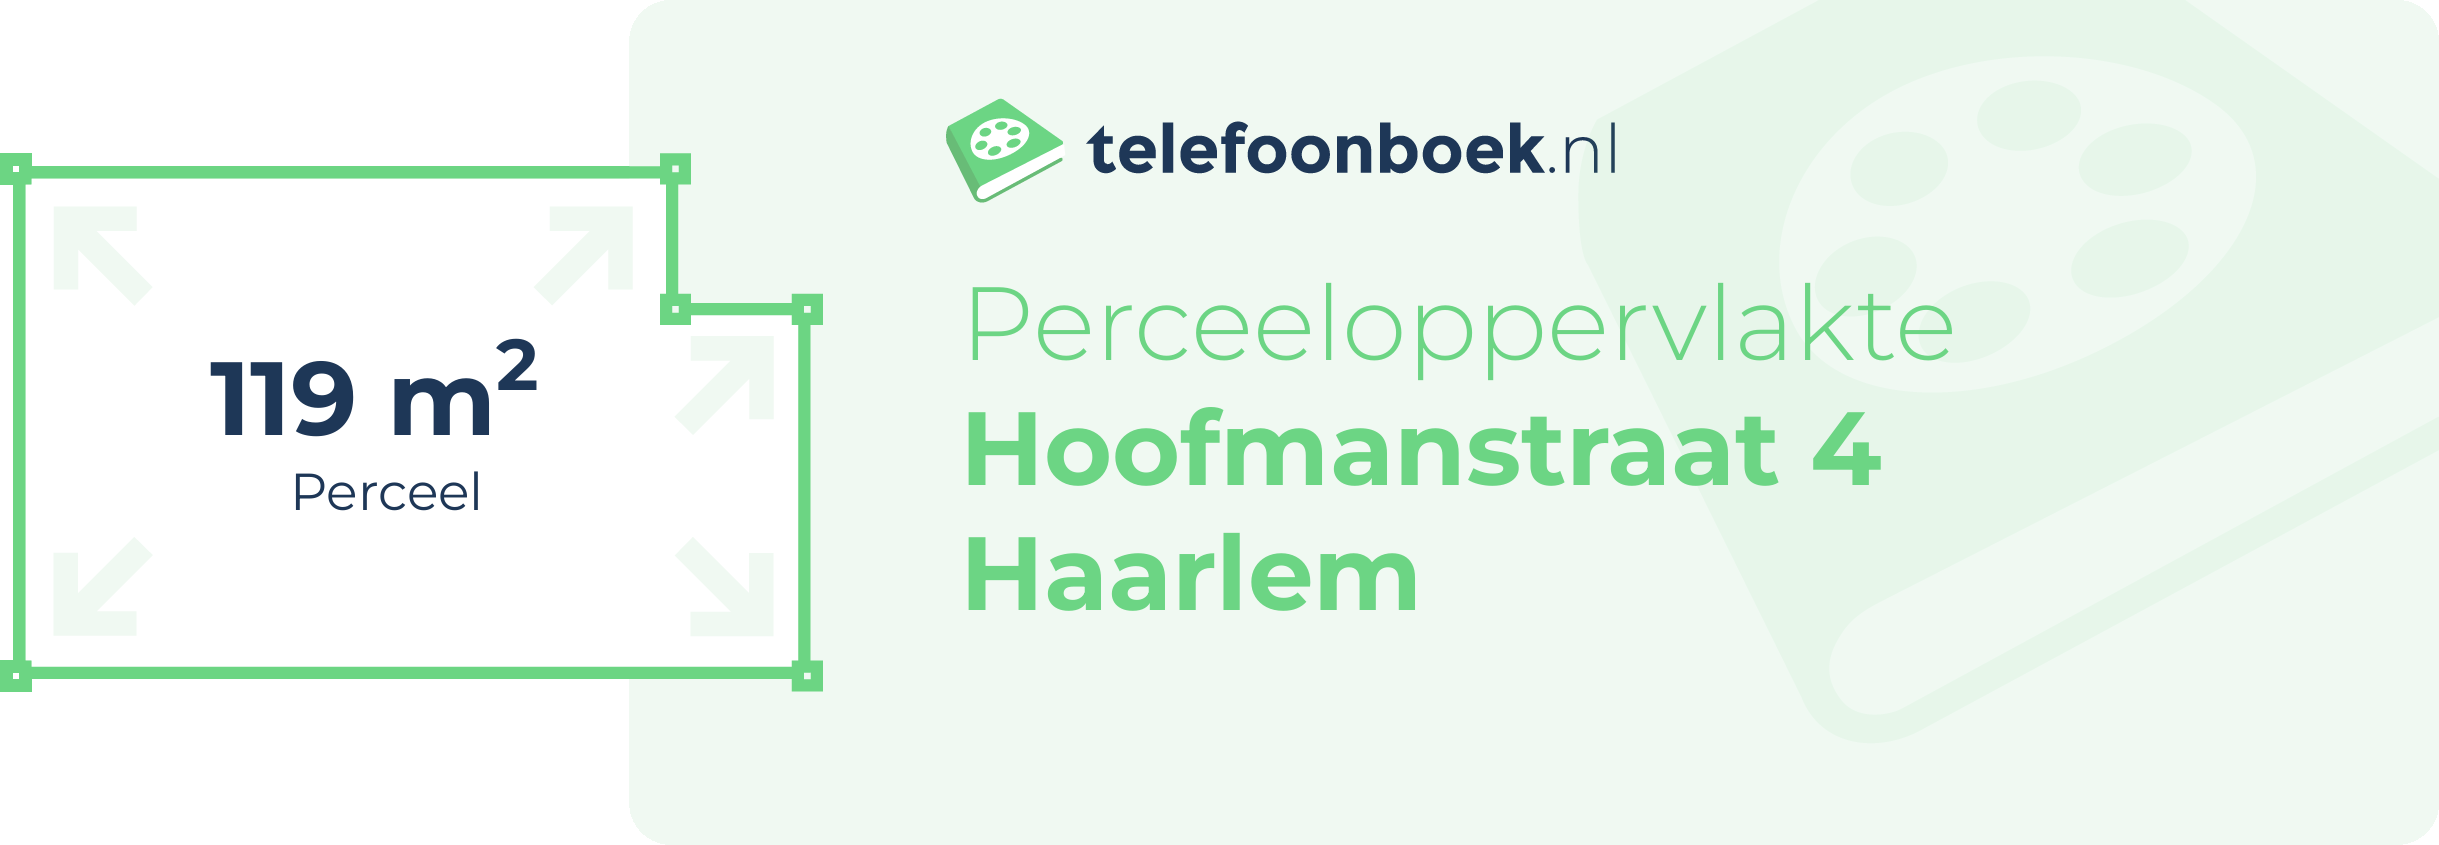 Perceeloppervlakte Hoofmanstraat 4 Haarlem